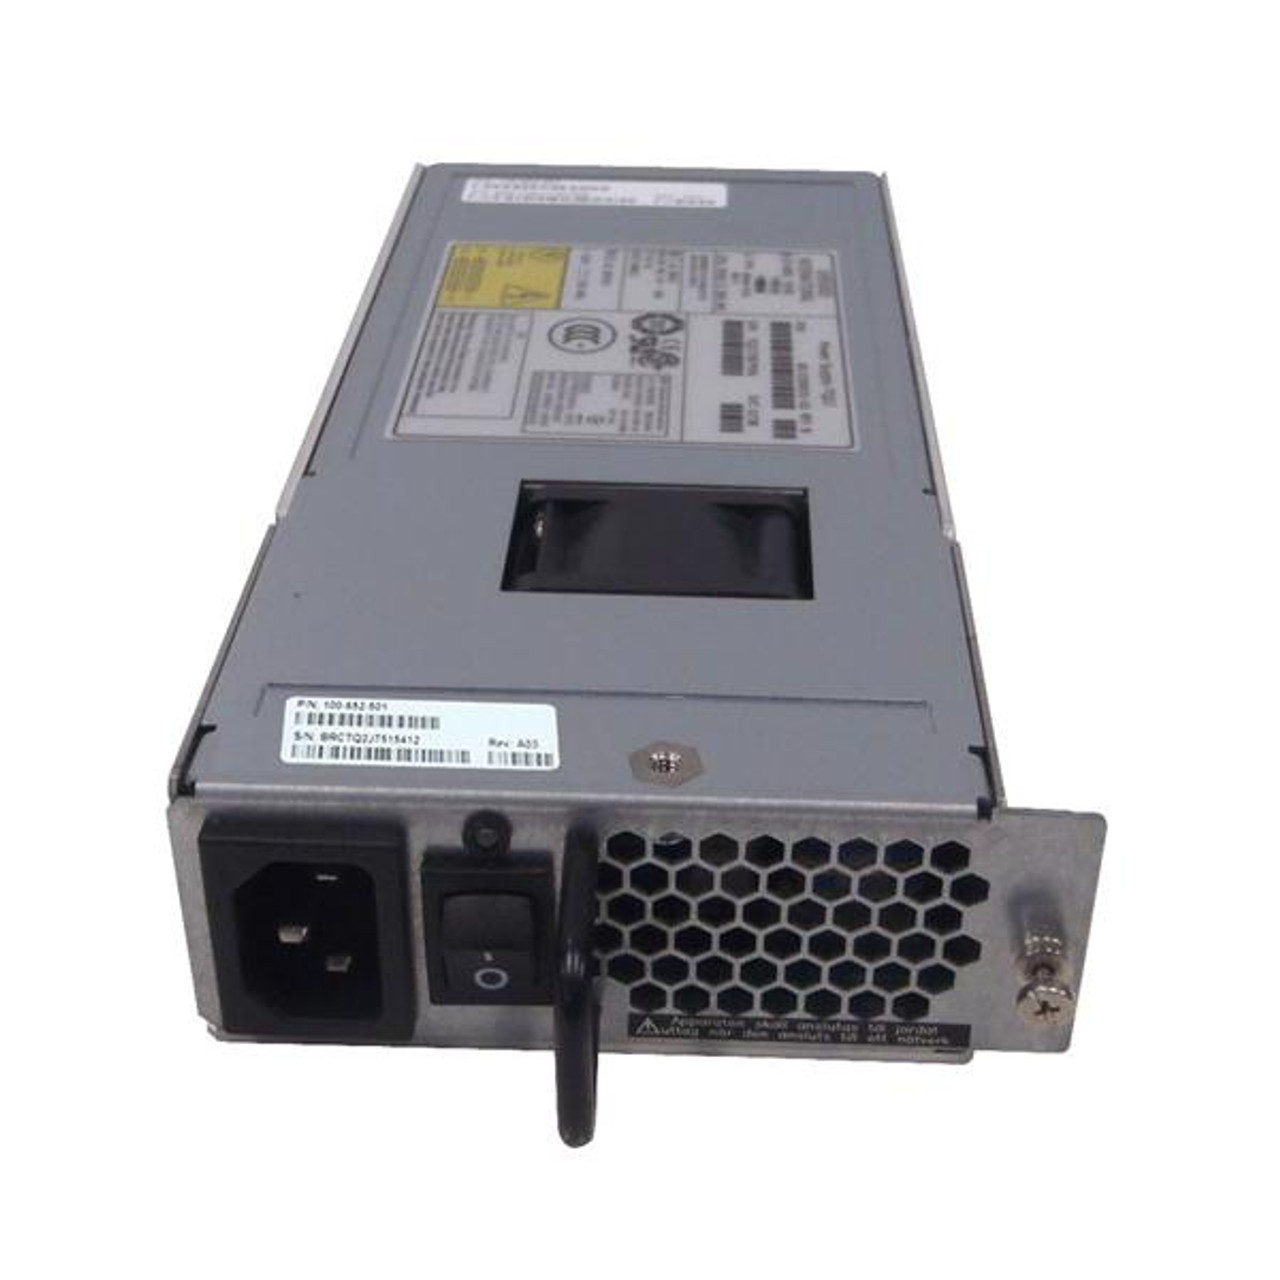 100-652-501 EMC 300-Watts Power Supply for DS-4900B MP-7500B AP-7600B DS-5300B Routers